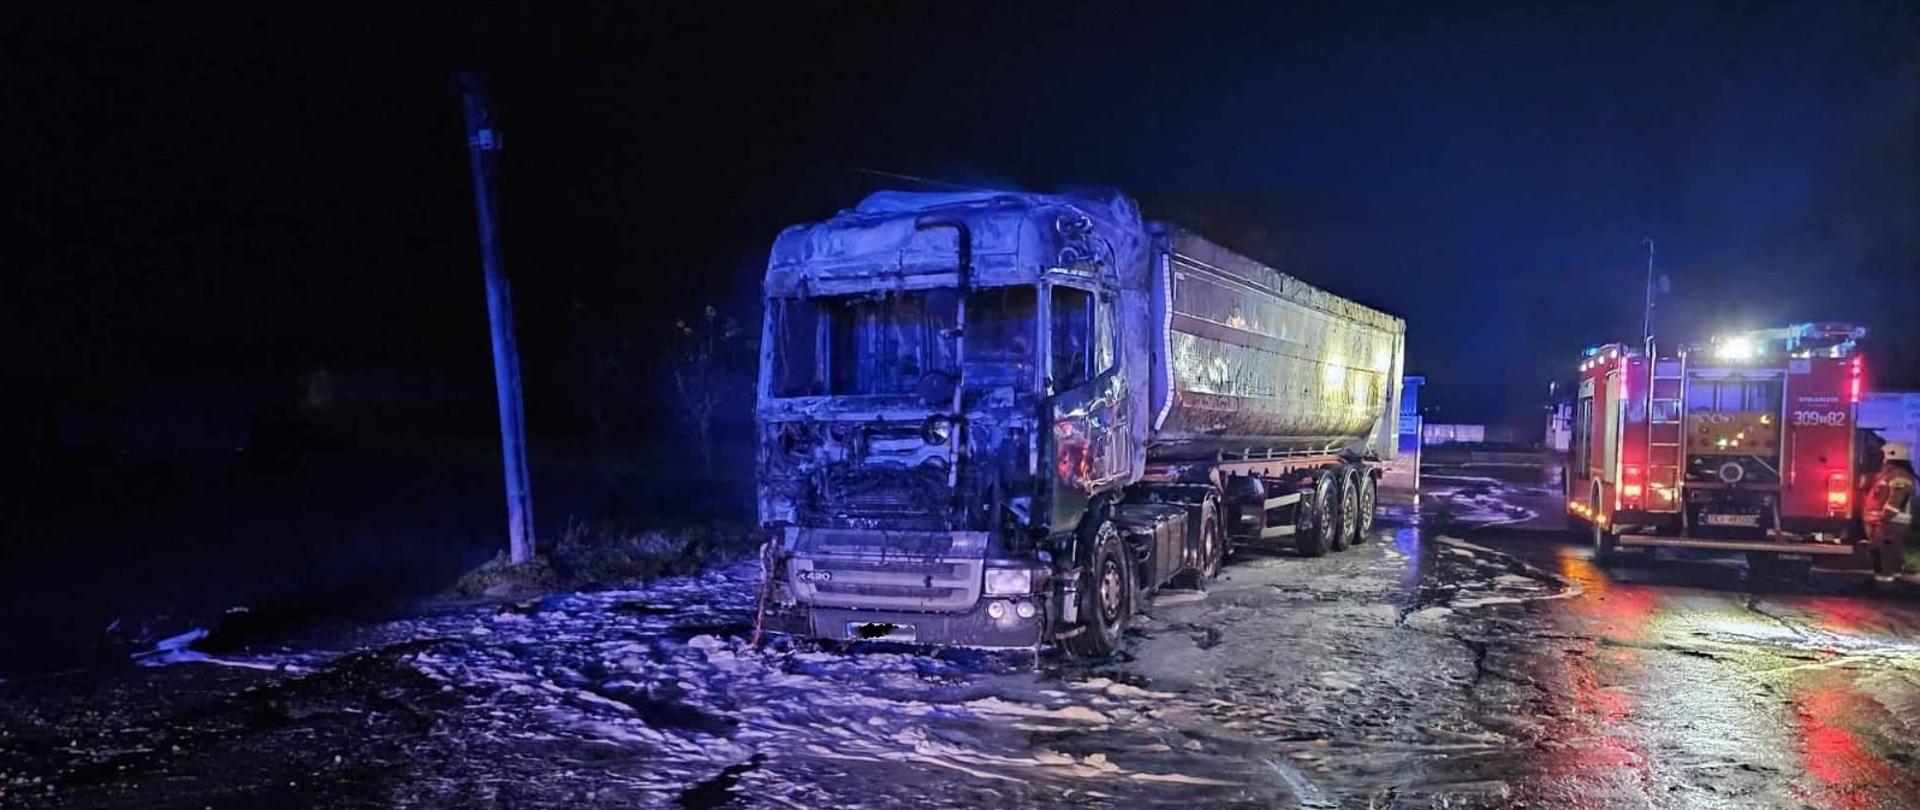 Zdjęcie przedstawia spalony samochód ciężarowy, po prawej stronie widać tył wozu strażackiego 